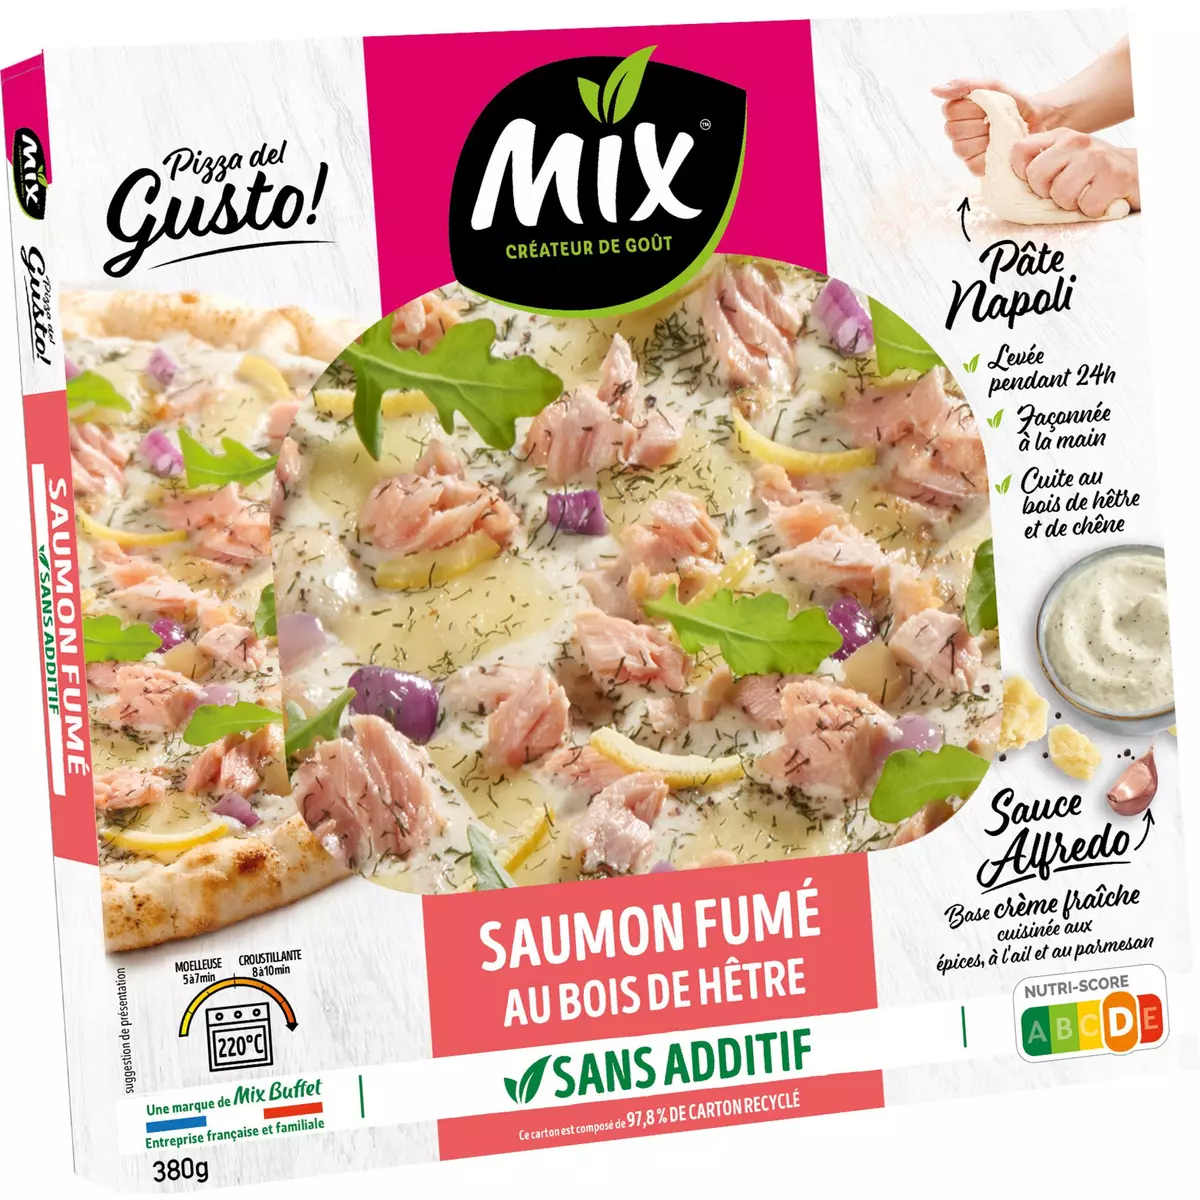 MIX Pizza del gusto saumon fumé au bois de hêtre sauce alfredo à partager 380g